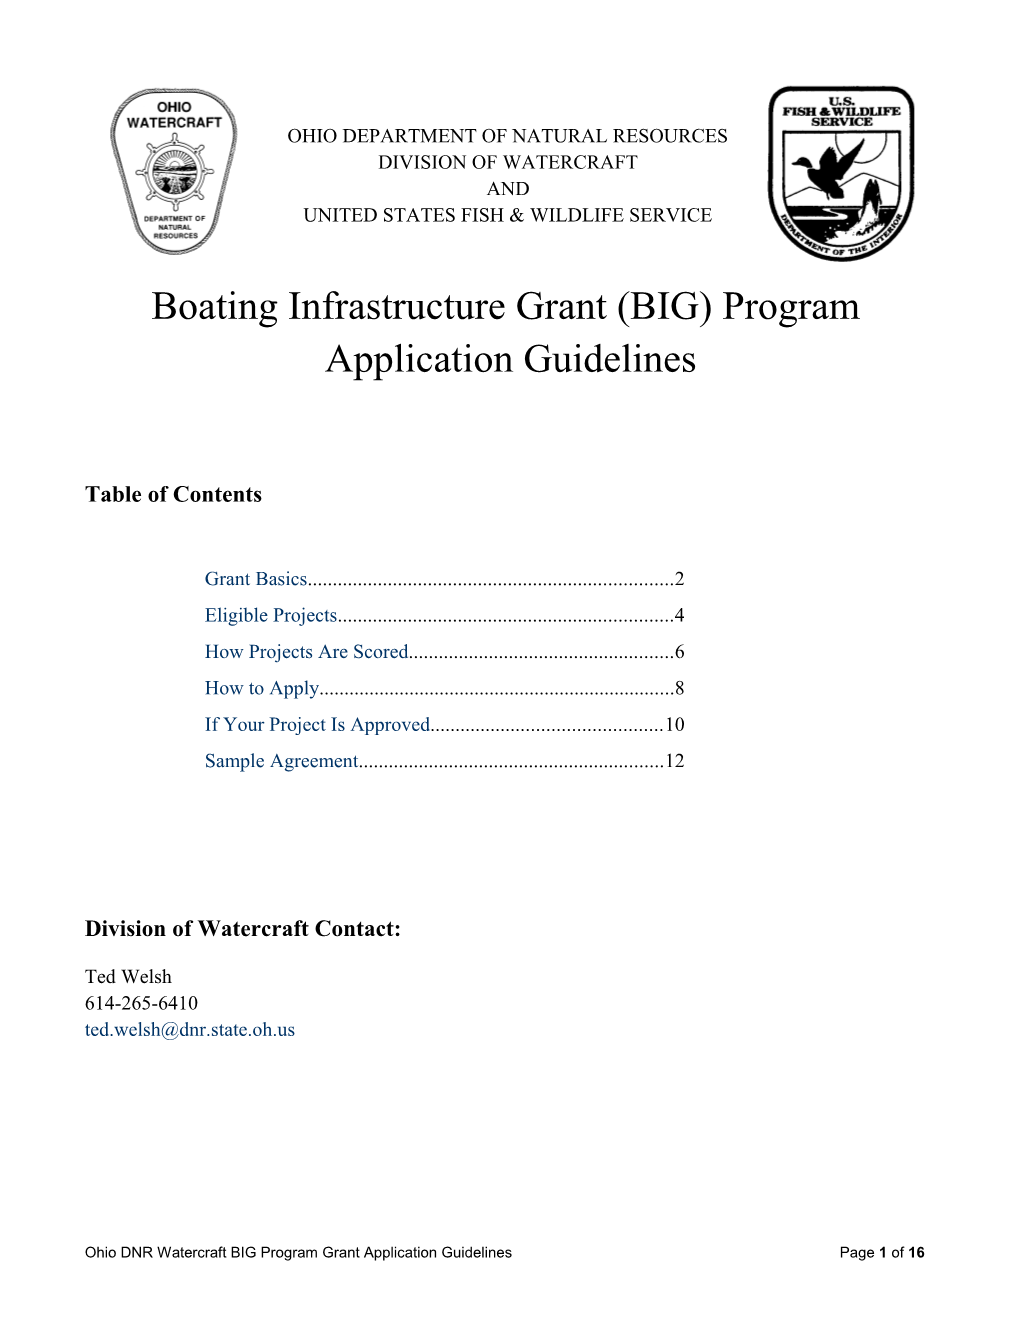 Boating Infrastructuregrant(BIG) Program Application Guidelines